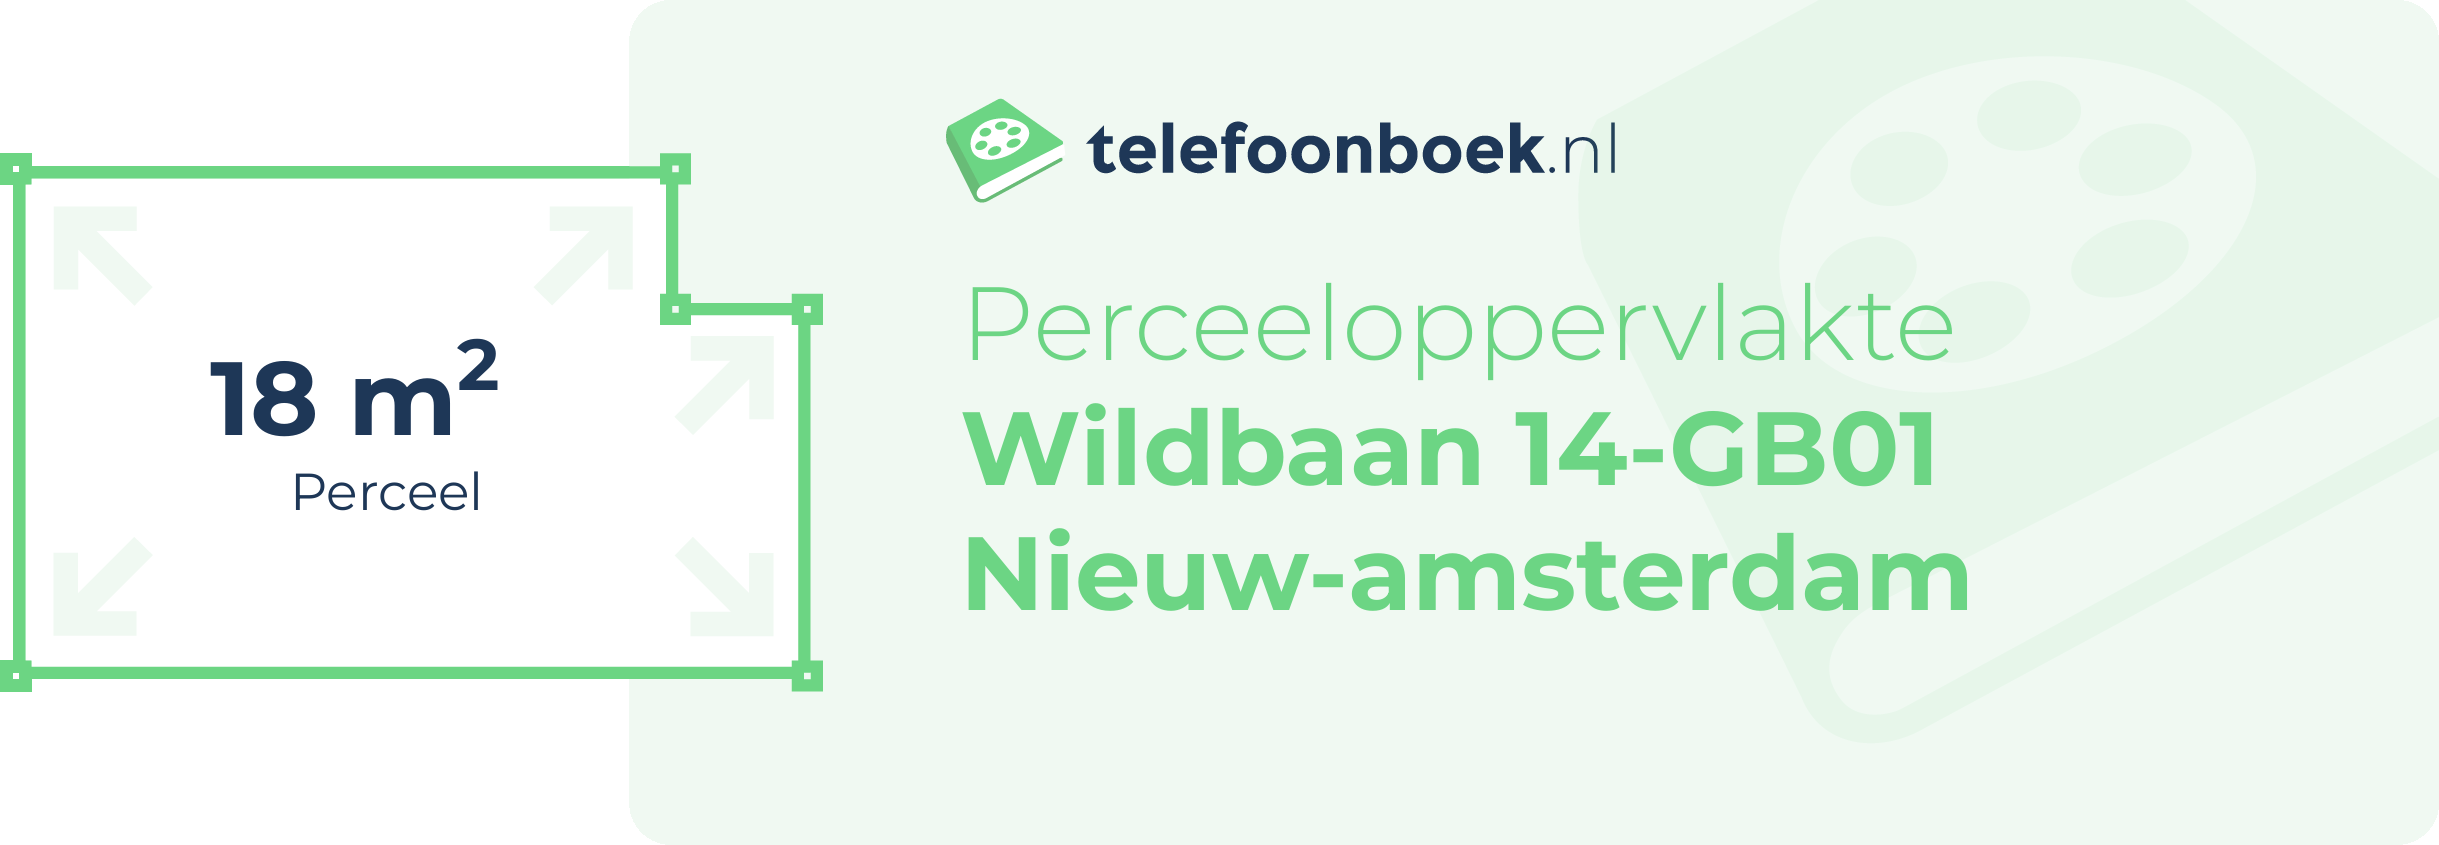 Perceeloppervlakte Wildbaan 14-GB01 Nieuw-Amsterdam